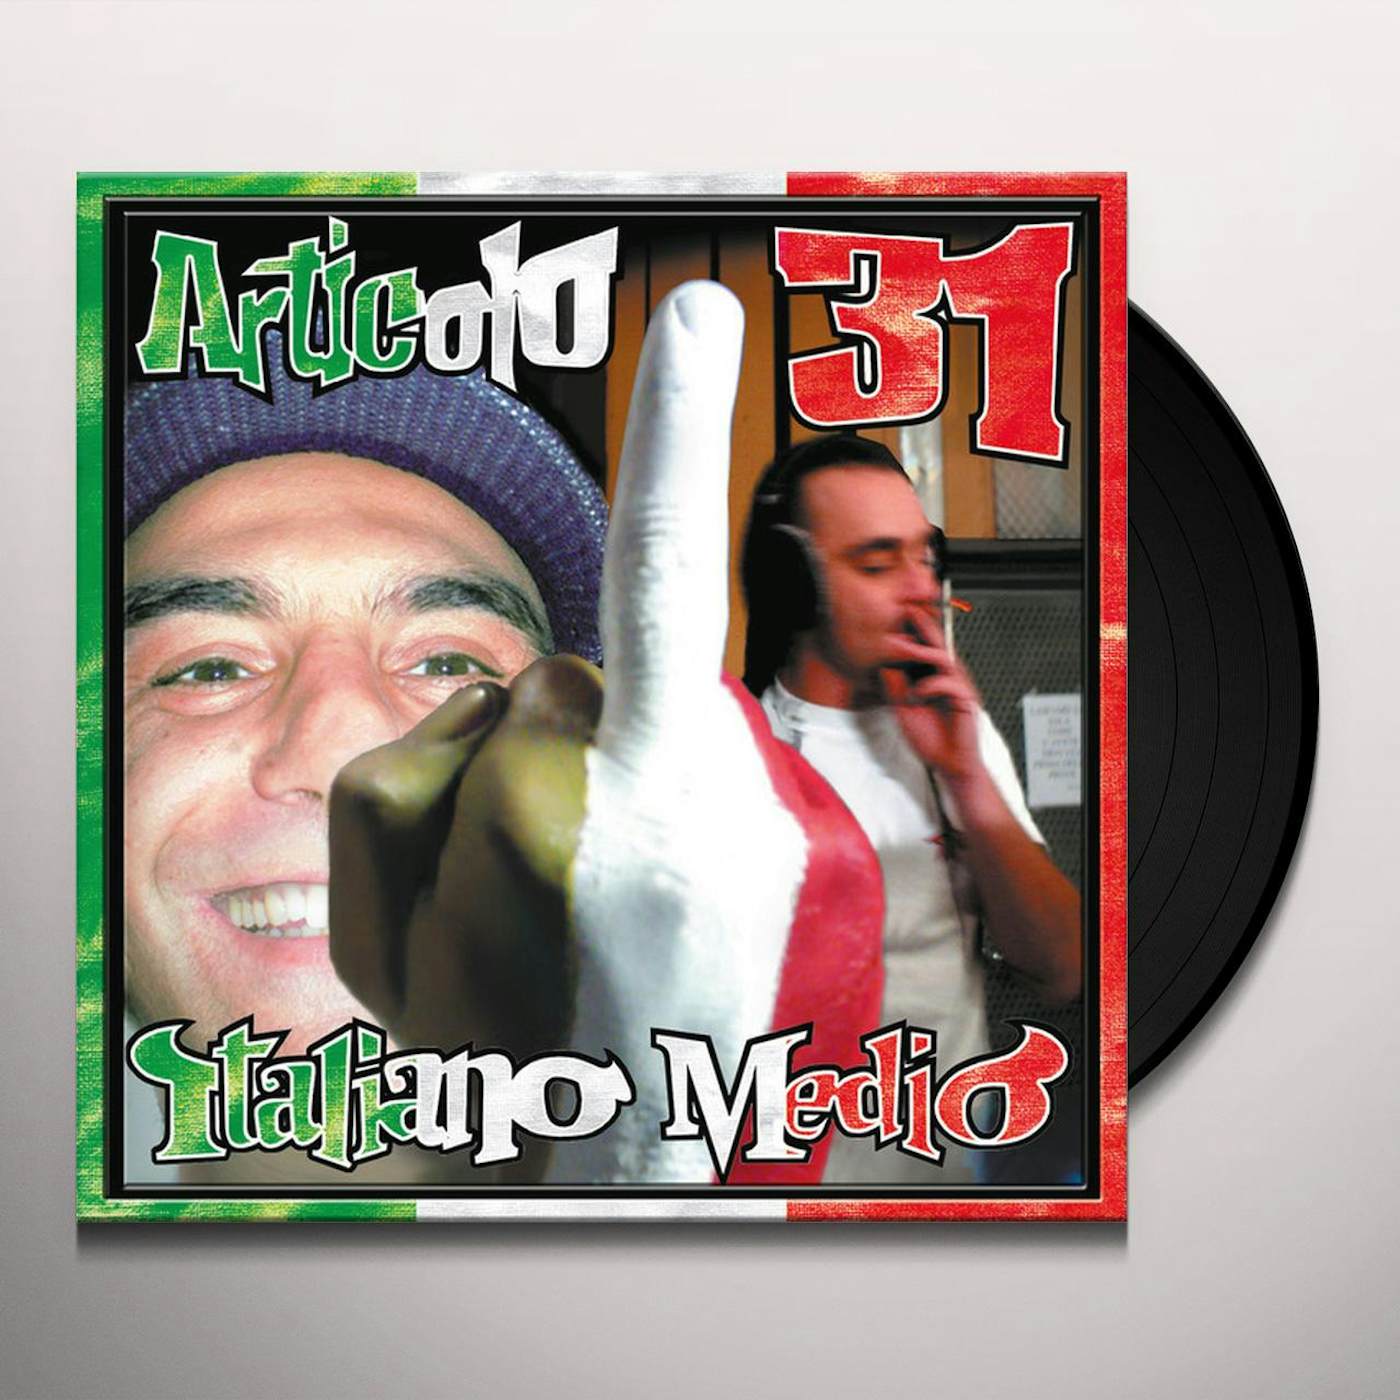 Articolo 31 Italiano medio Vinyl Record